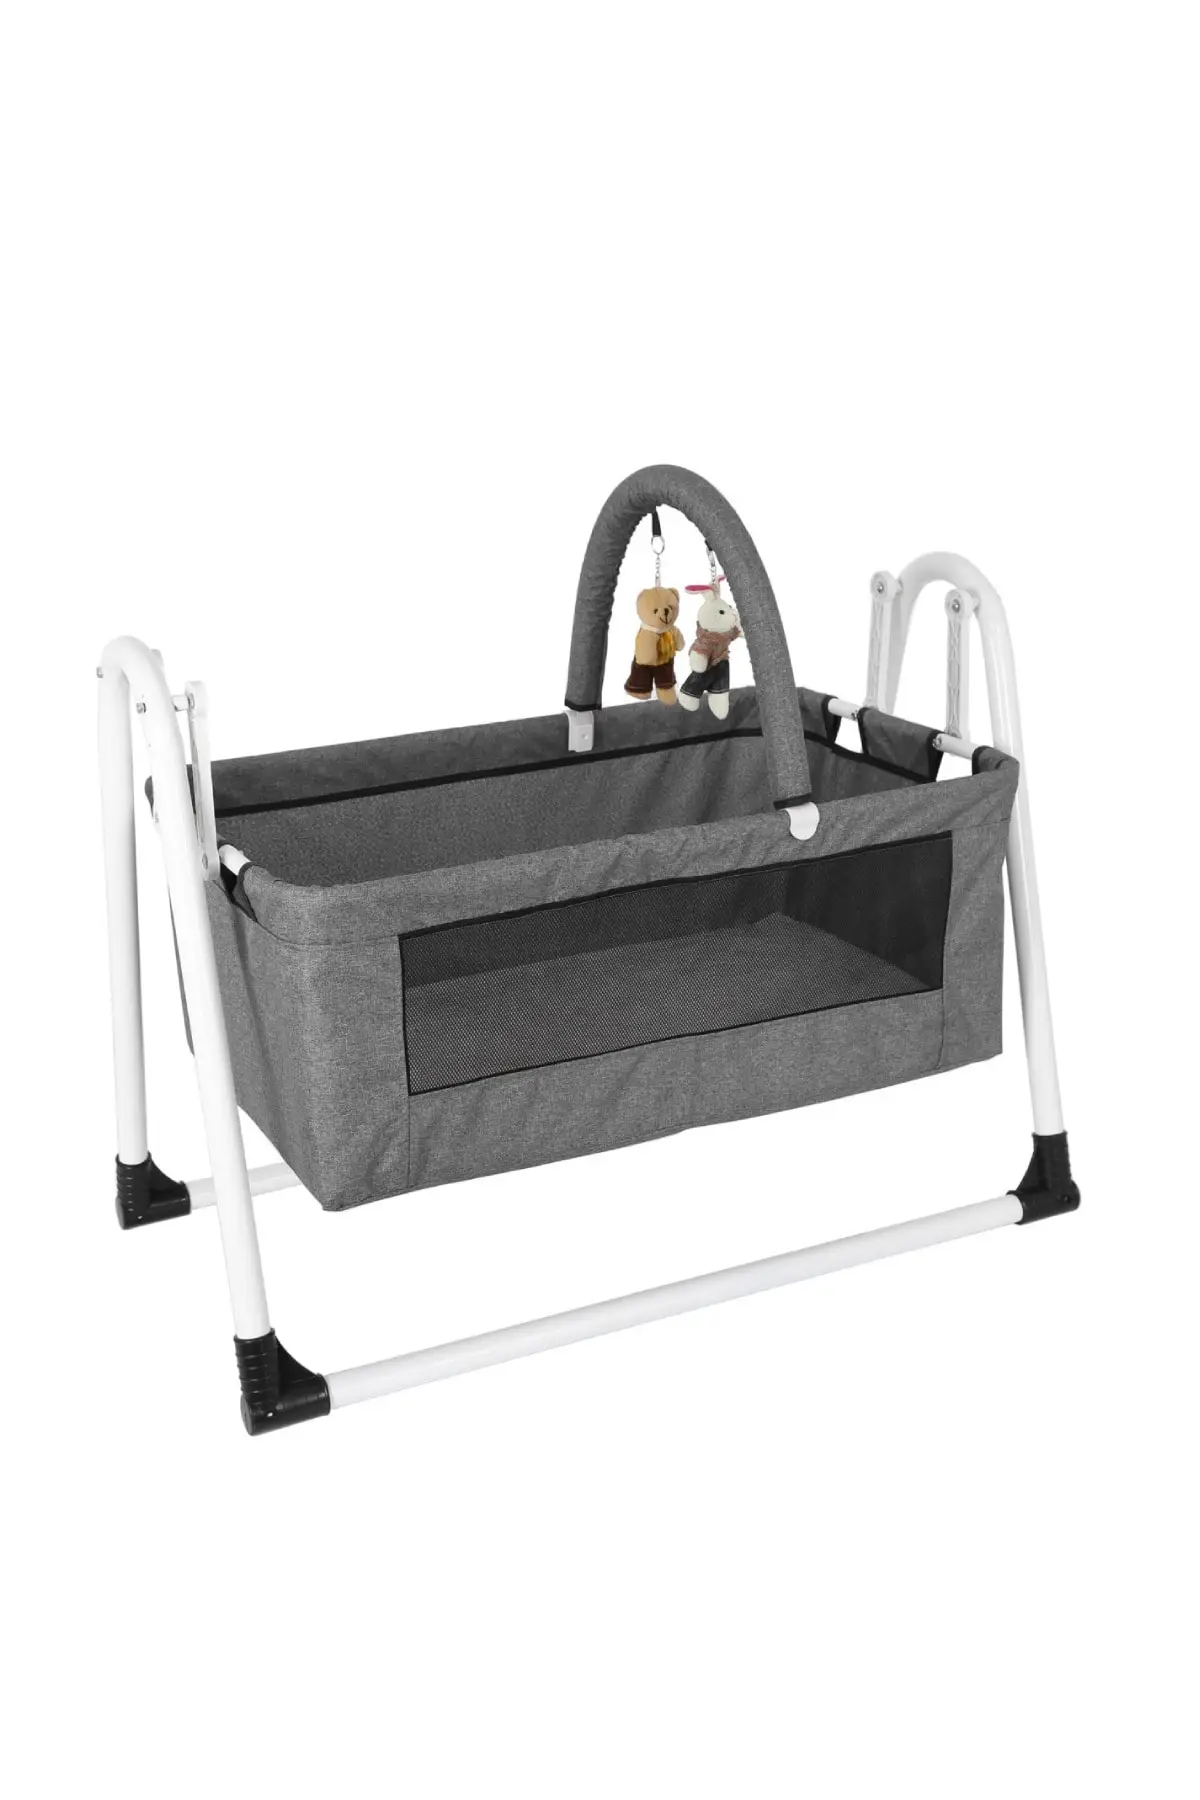 Crib Washable Fabric Baby Cradle Quirky Portable Basket Cradle Gray Crib